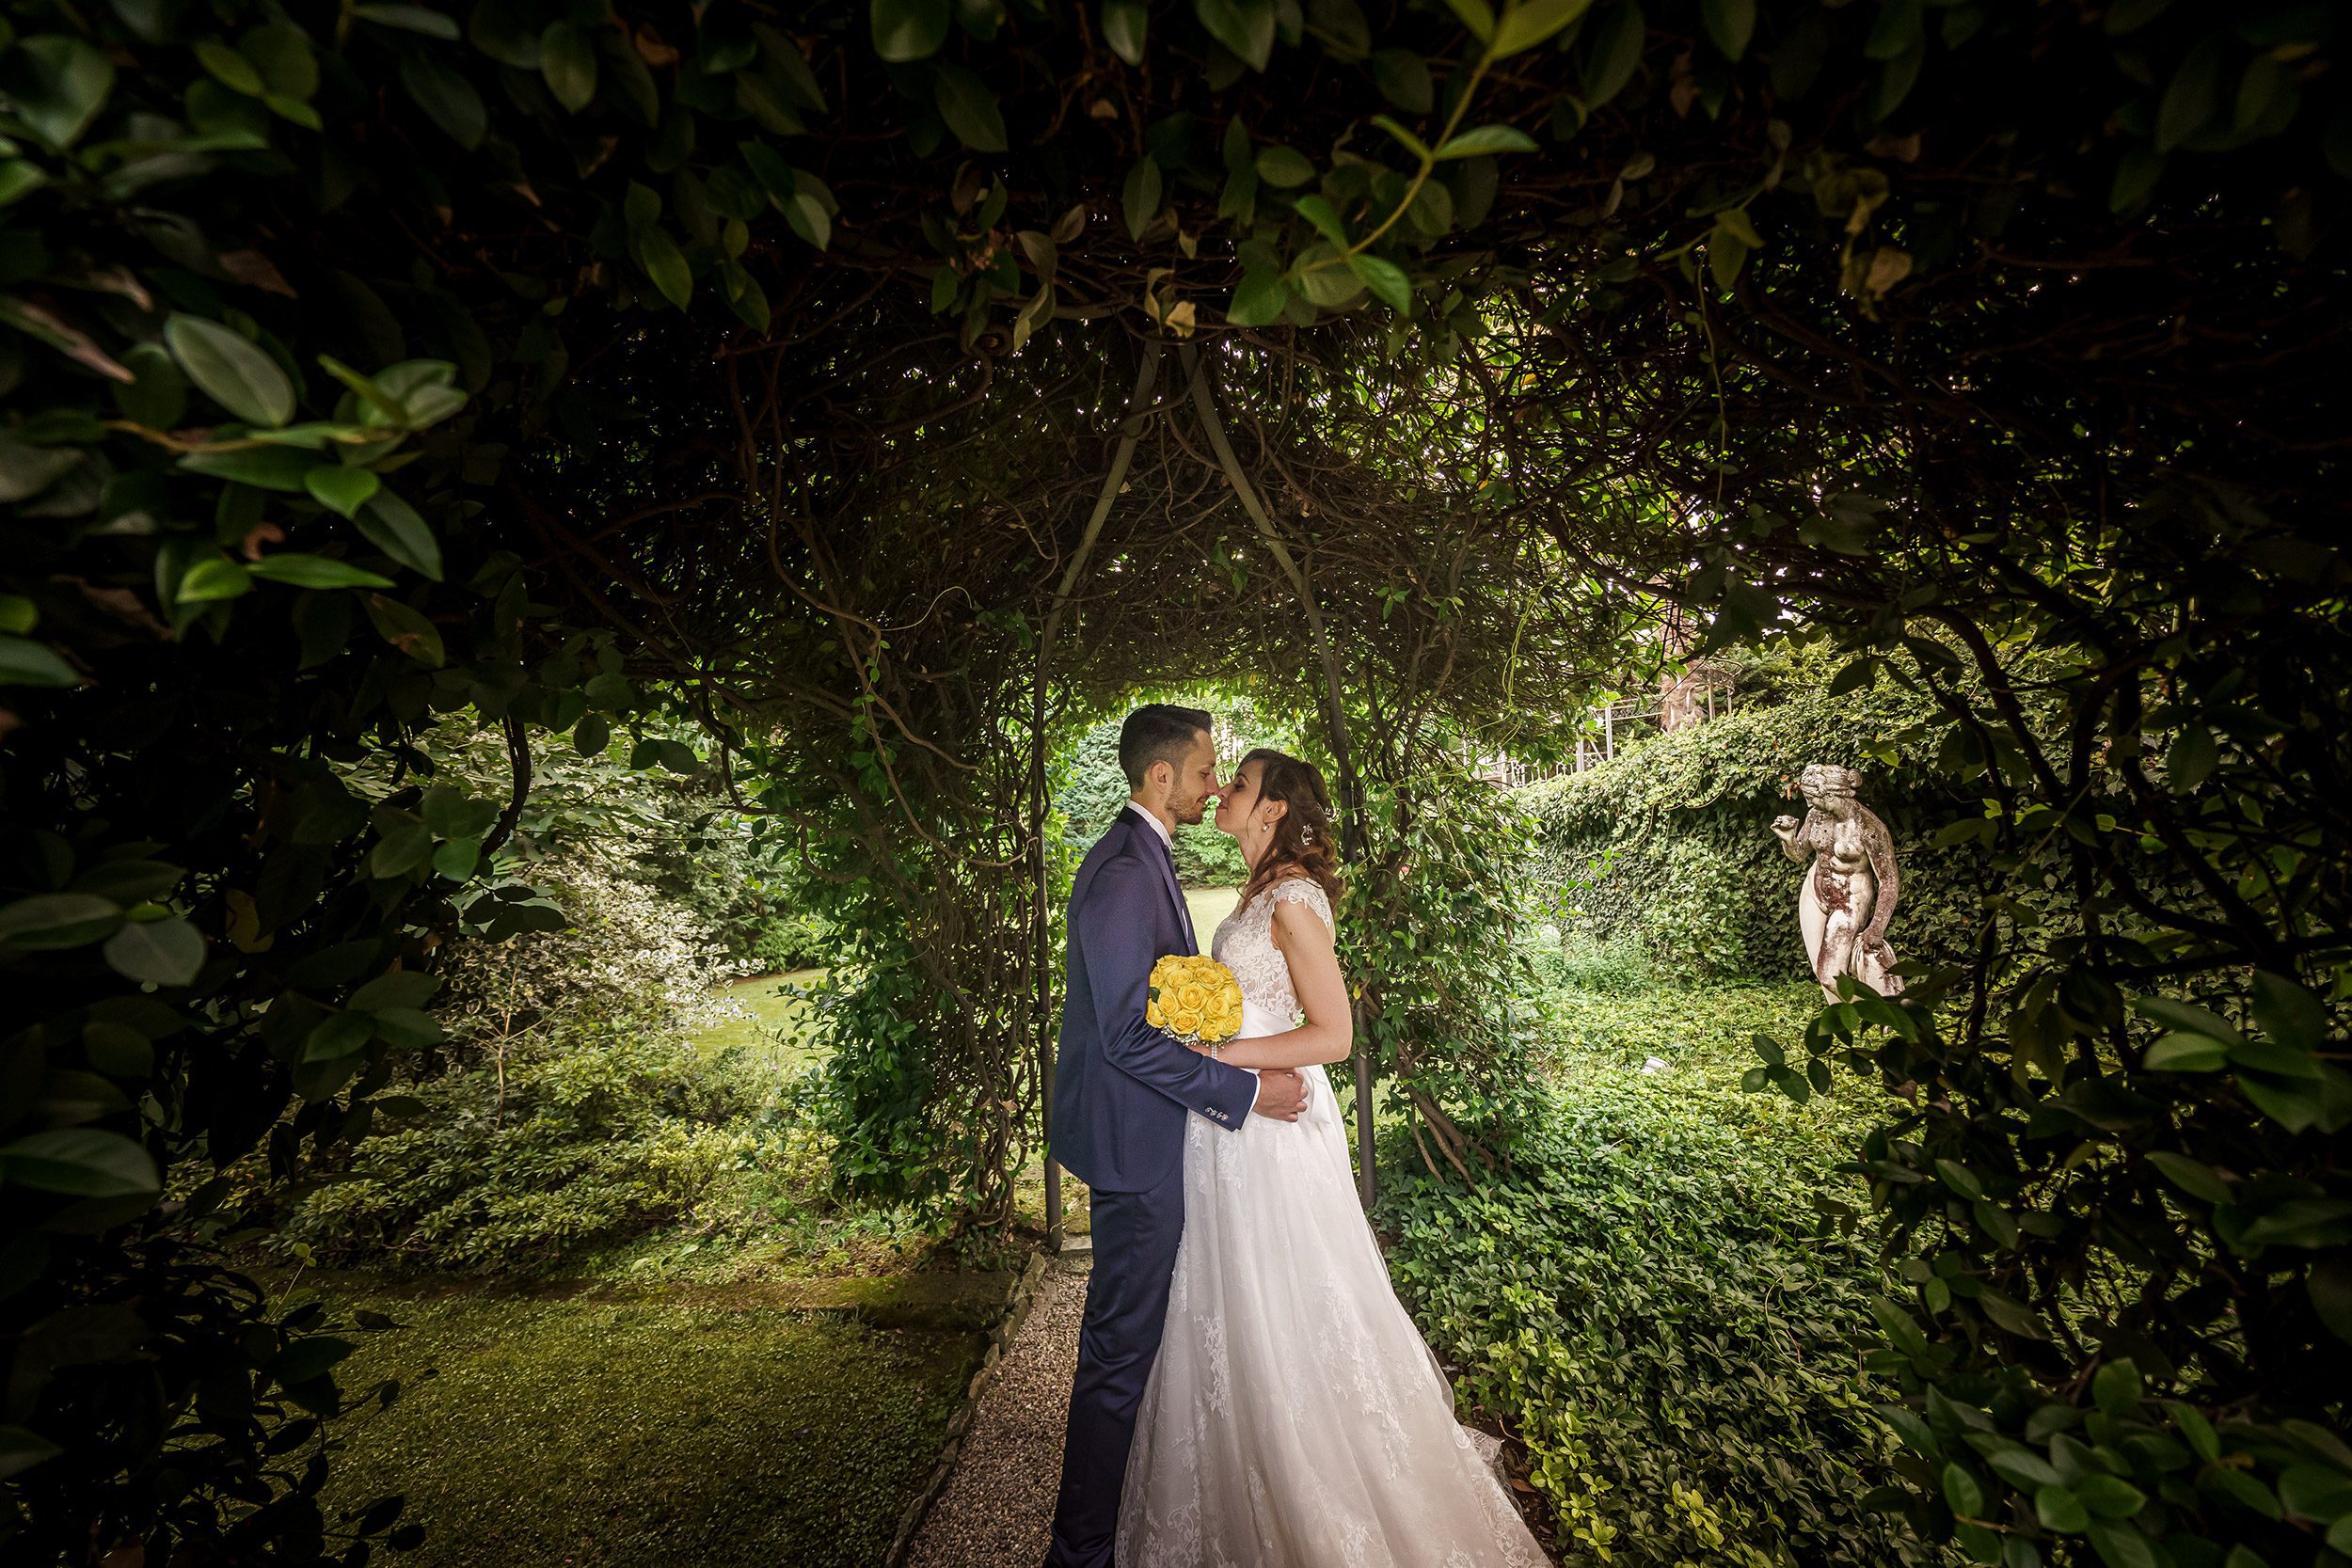 000 fotografo matrimonio reportage wedding ritratto sposi parco giardini villa novecento lesmo monza brianza 1